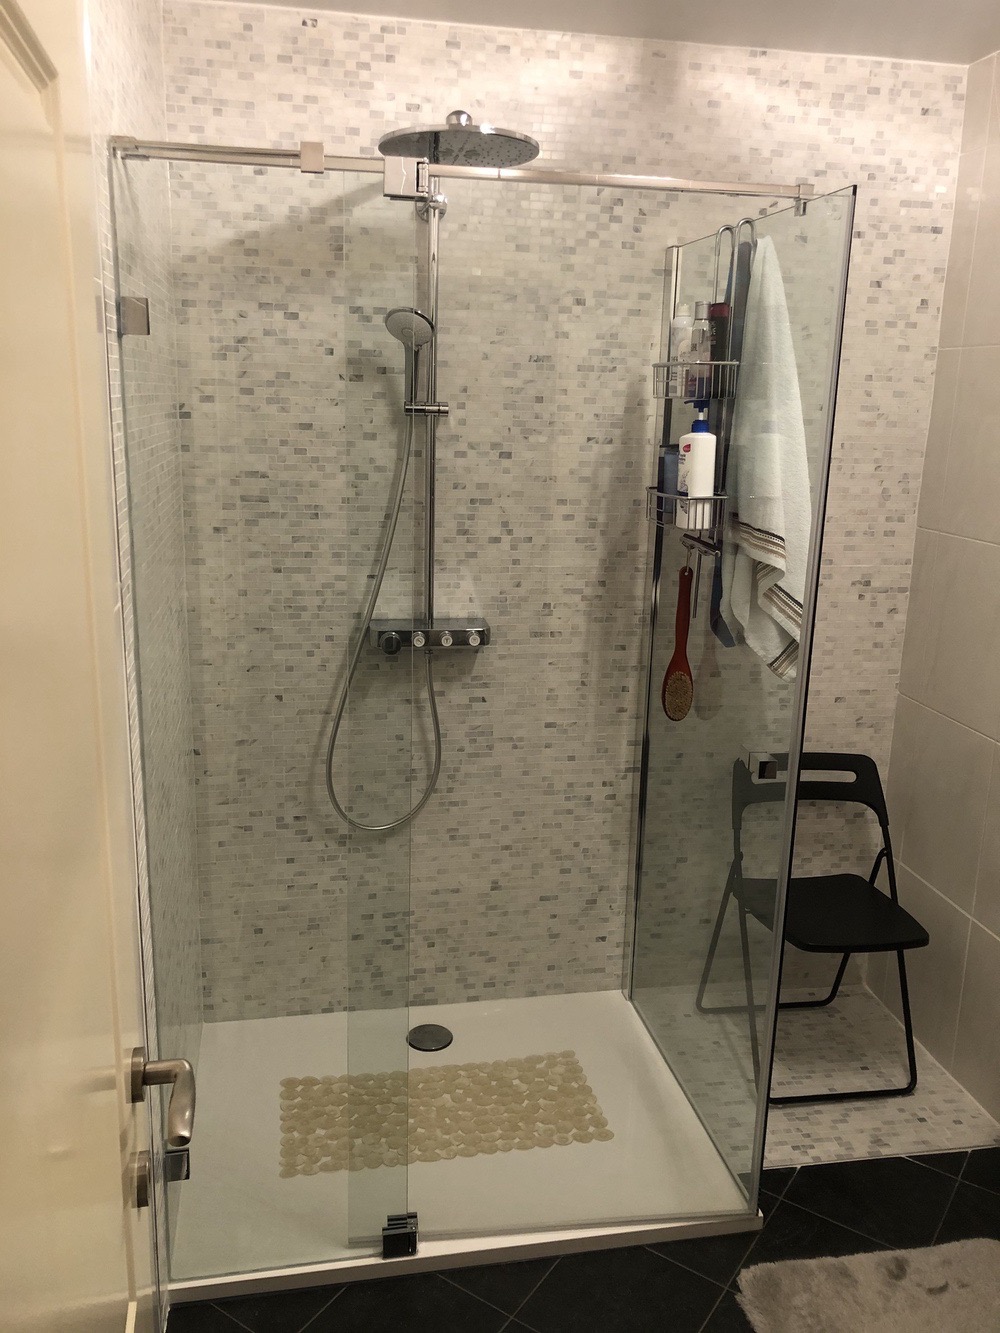 Bad naar douche renovatie